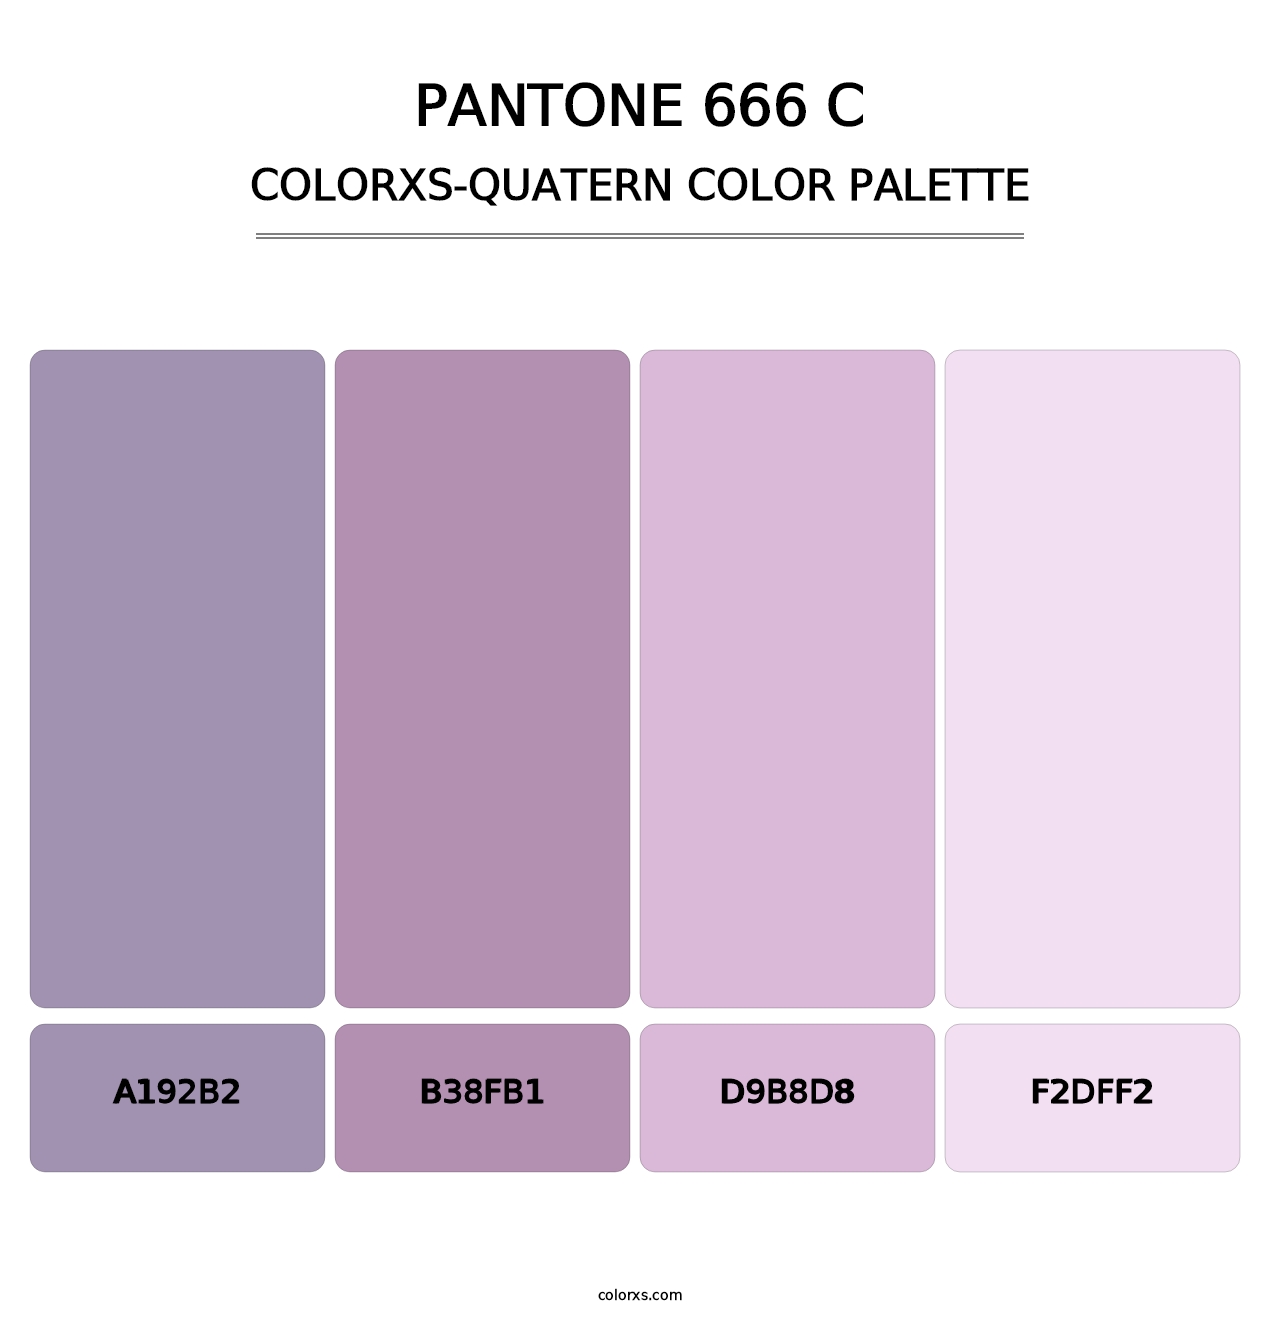 PANTONE 666 C - Colorxs Quatern Palette